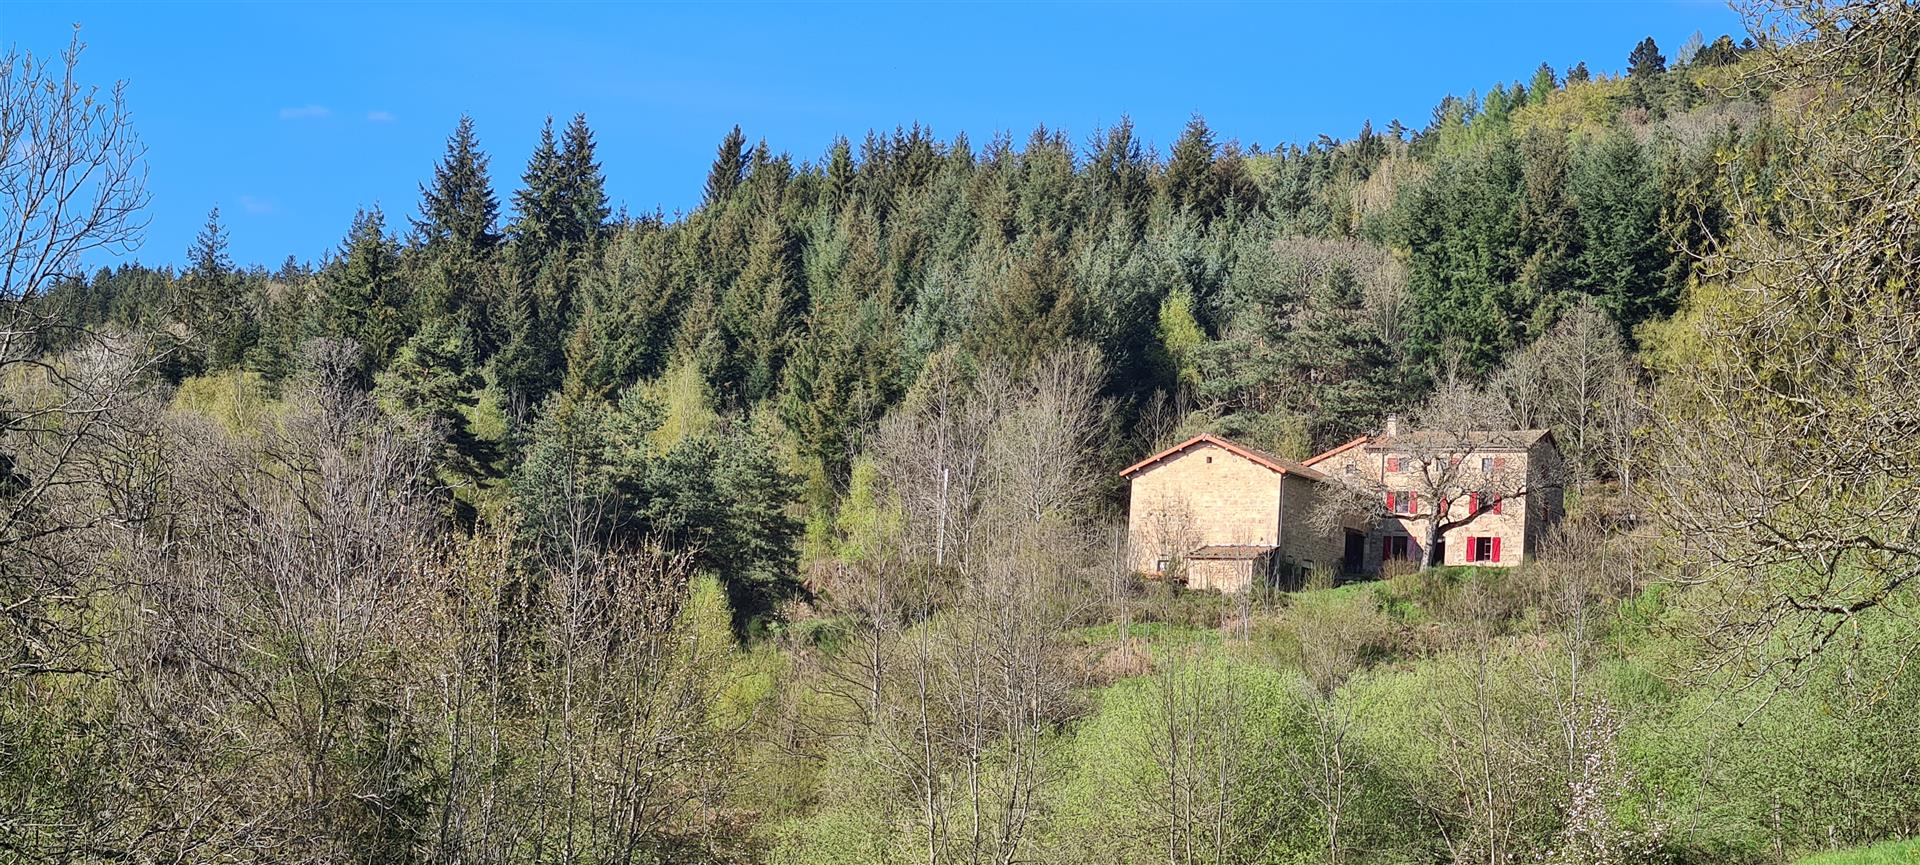 Ferme robuste avec granges, beaucoup de terrain et un bel emplacement Massif central, Auvergne, Puy